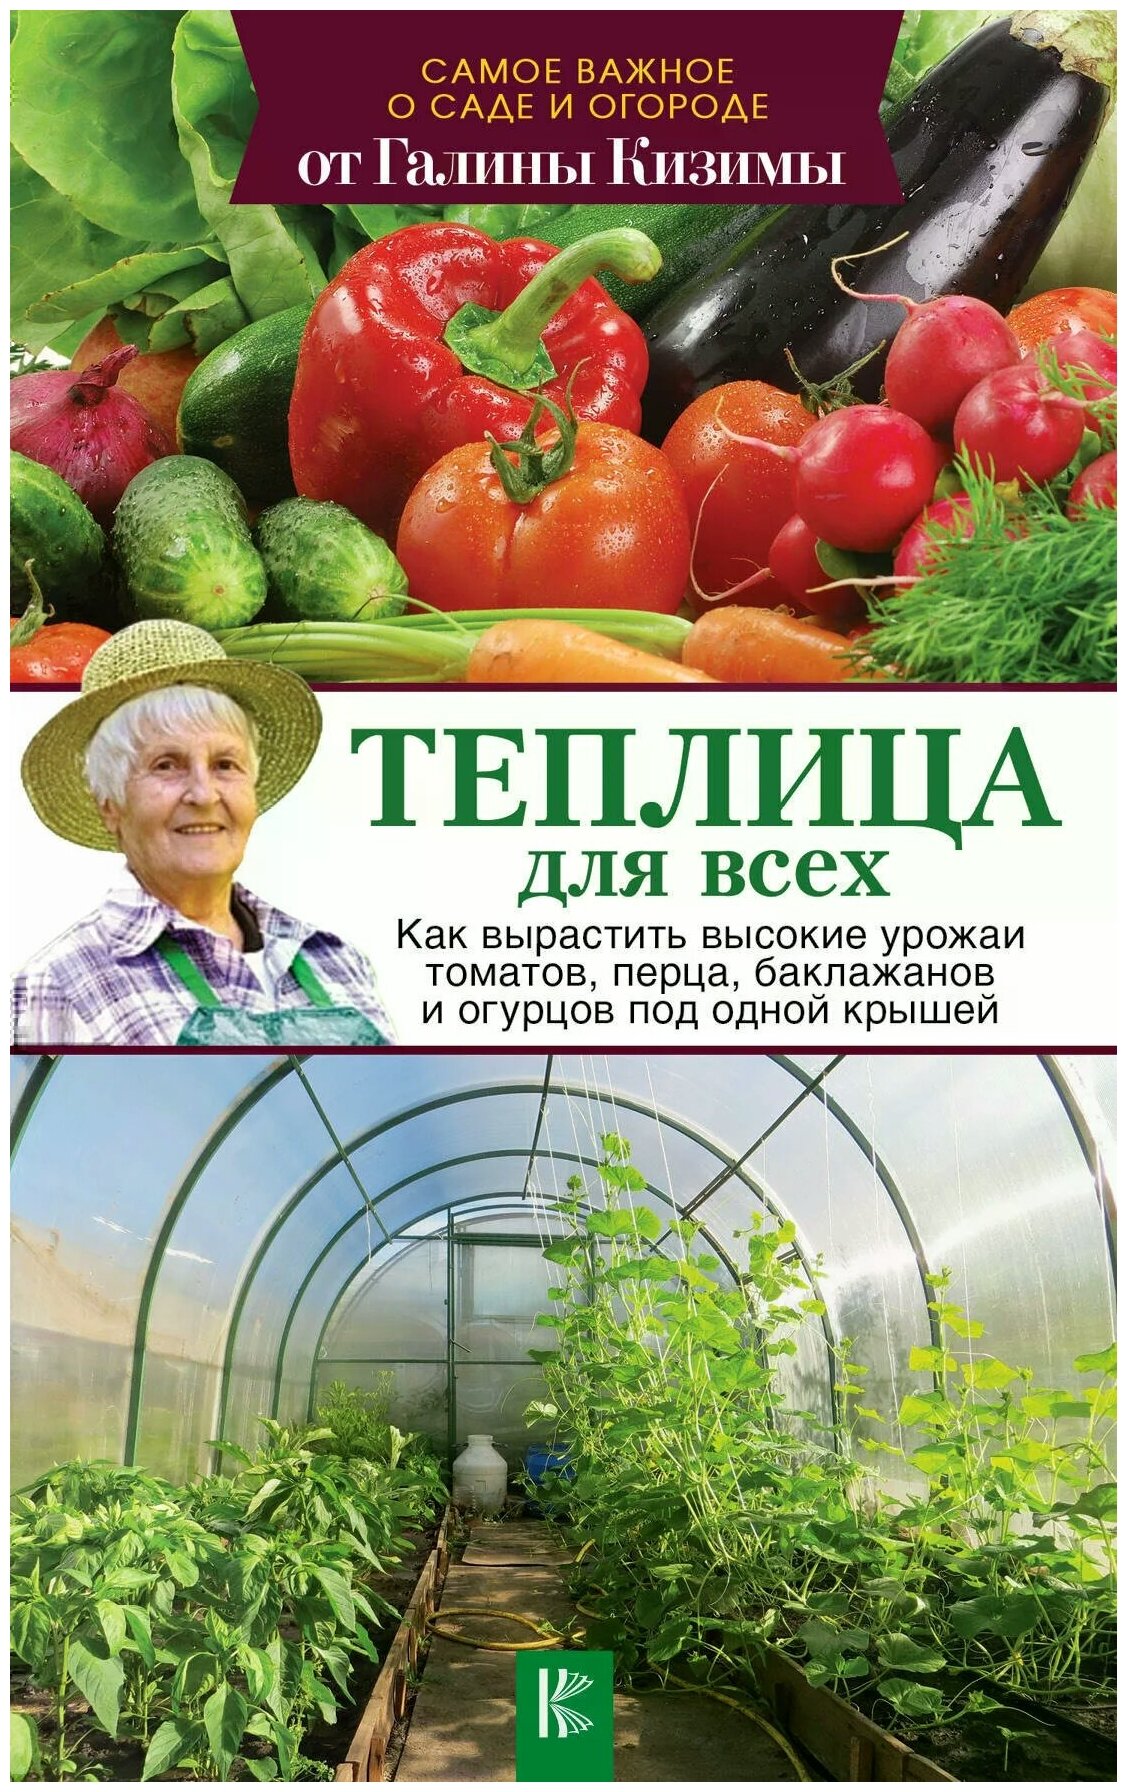 Галина Кизима "Теплица для всех. Как вырастить высокие урожаи томатов, перца, баклажанов и огурцов под одной крышей"